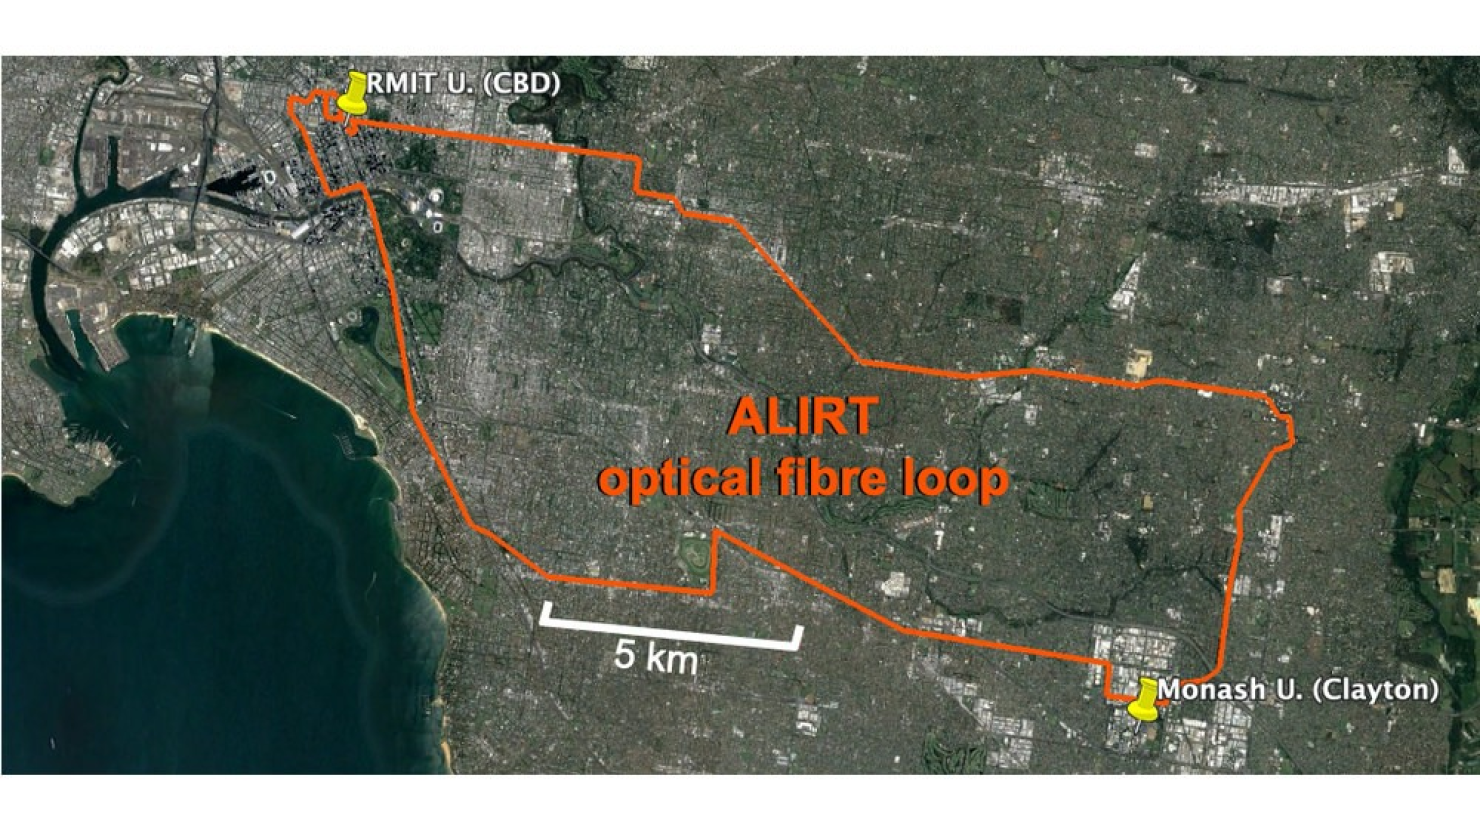 ALIRT optical fibre loop